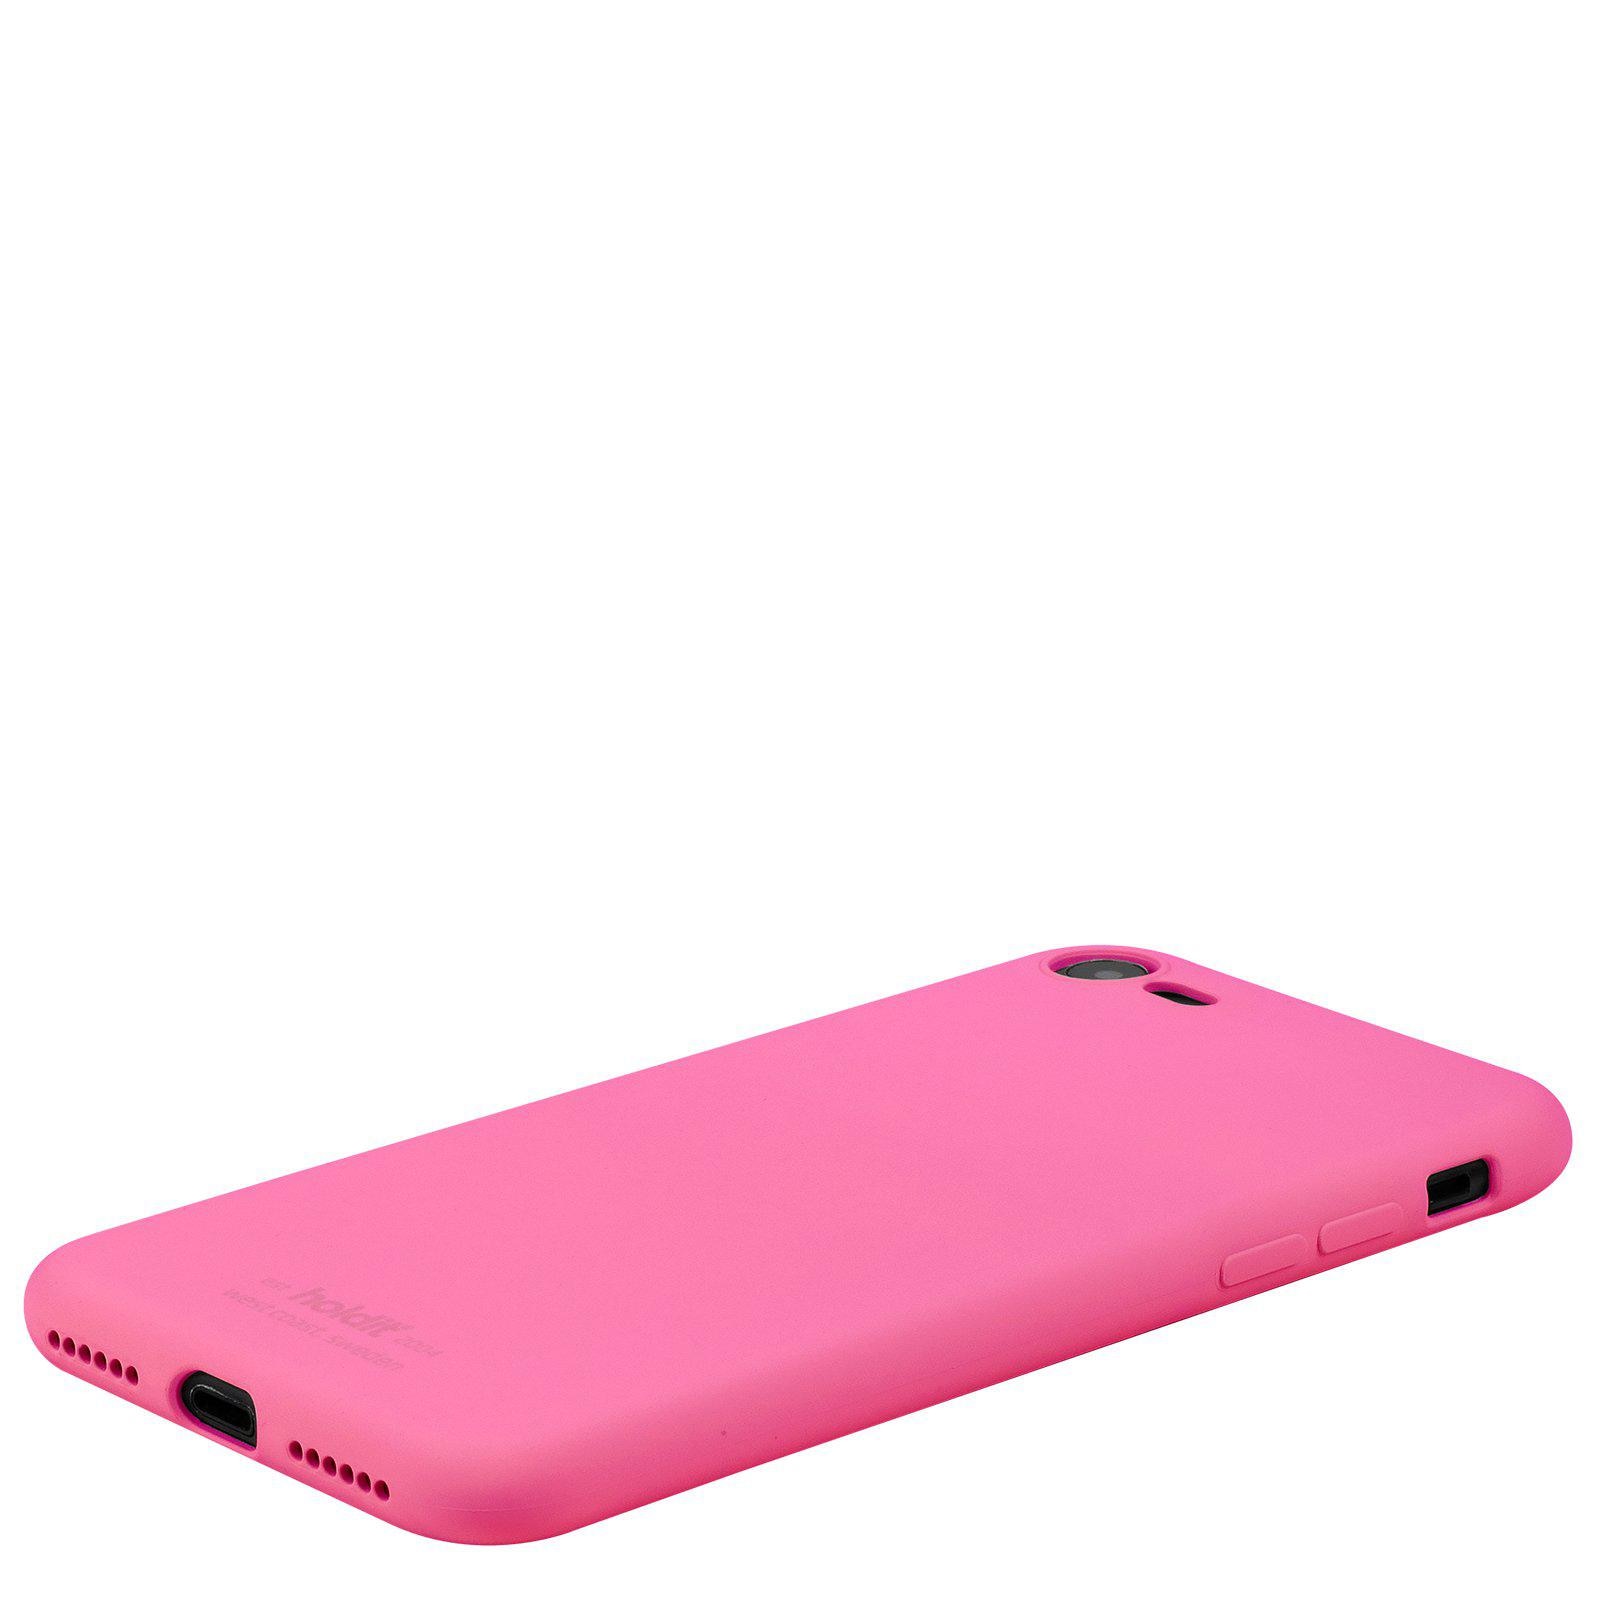 Silikonhülle iPhone 8 Bright Pink